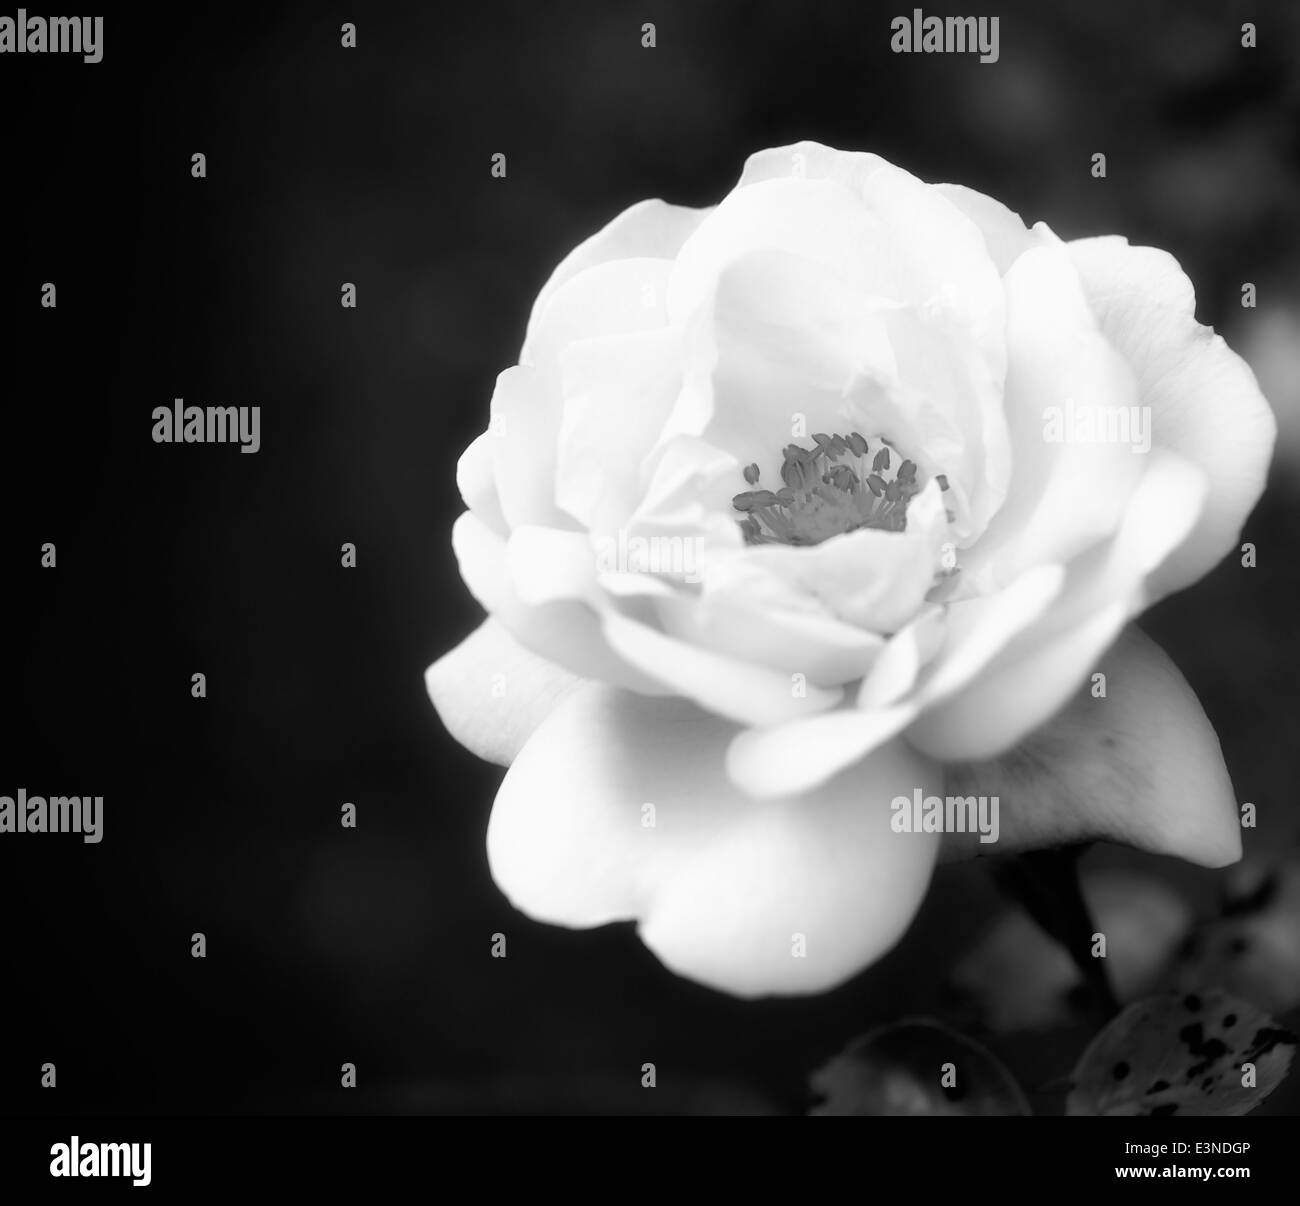 1 rose rose avec une lueur rêveuse filtre appliqué dans le traitement noir et blanc Banque D'Images